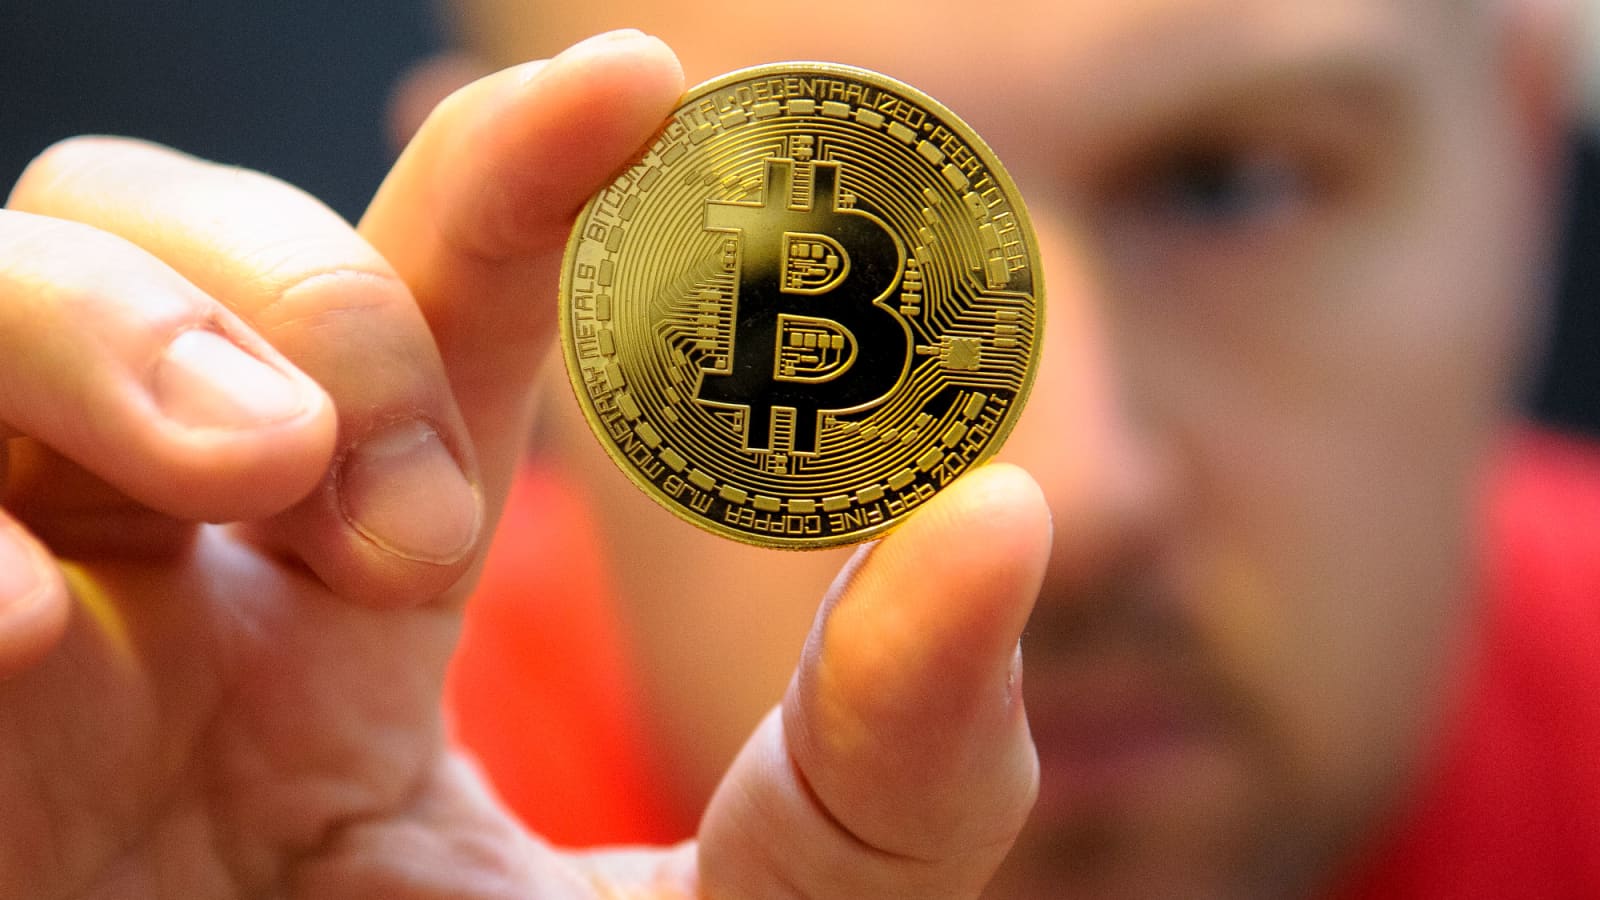 bitcoin mjb 2013 value